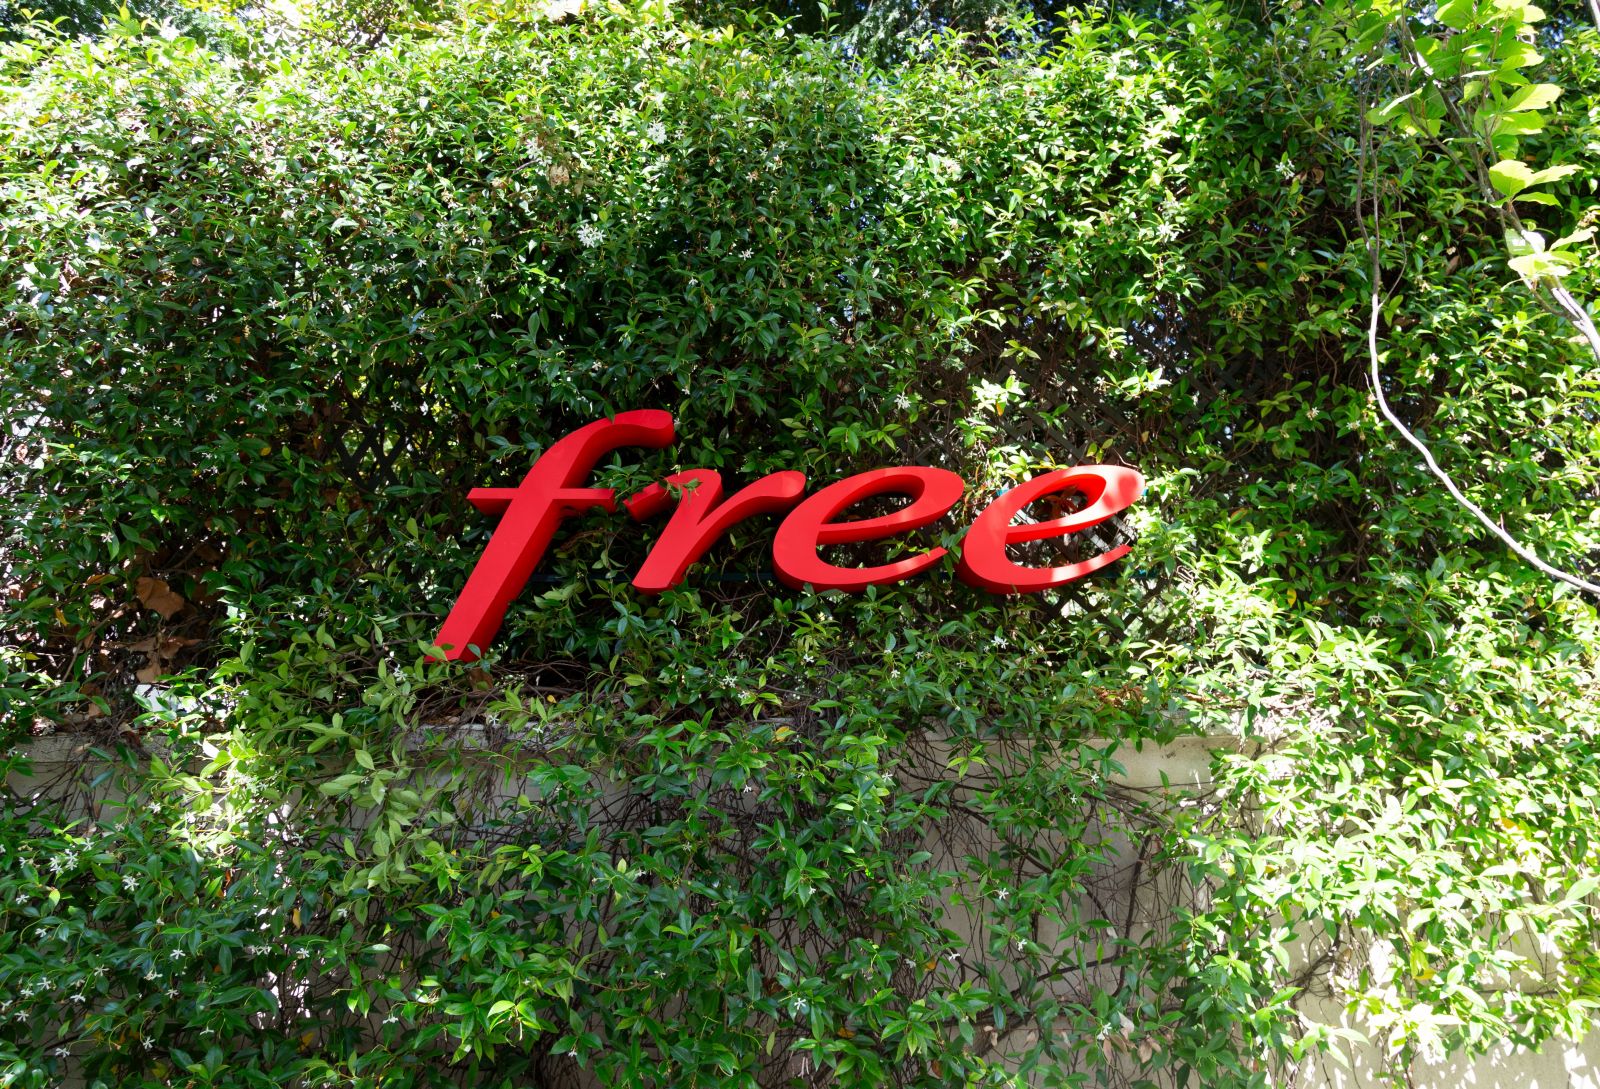 Les nouveautés de la semaine chez Free et Free Mobile : enfin une application pour tous les abonnements Freebox, lancement de deux chaînes et d'une offre spéciale